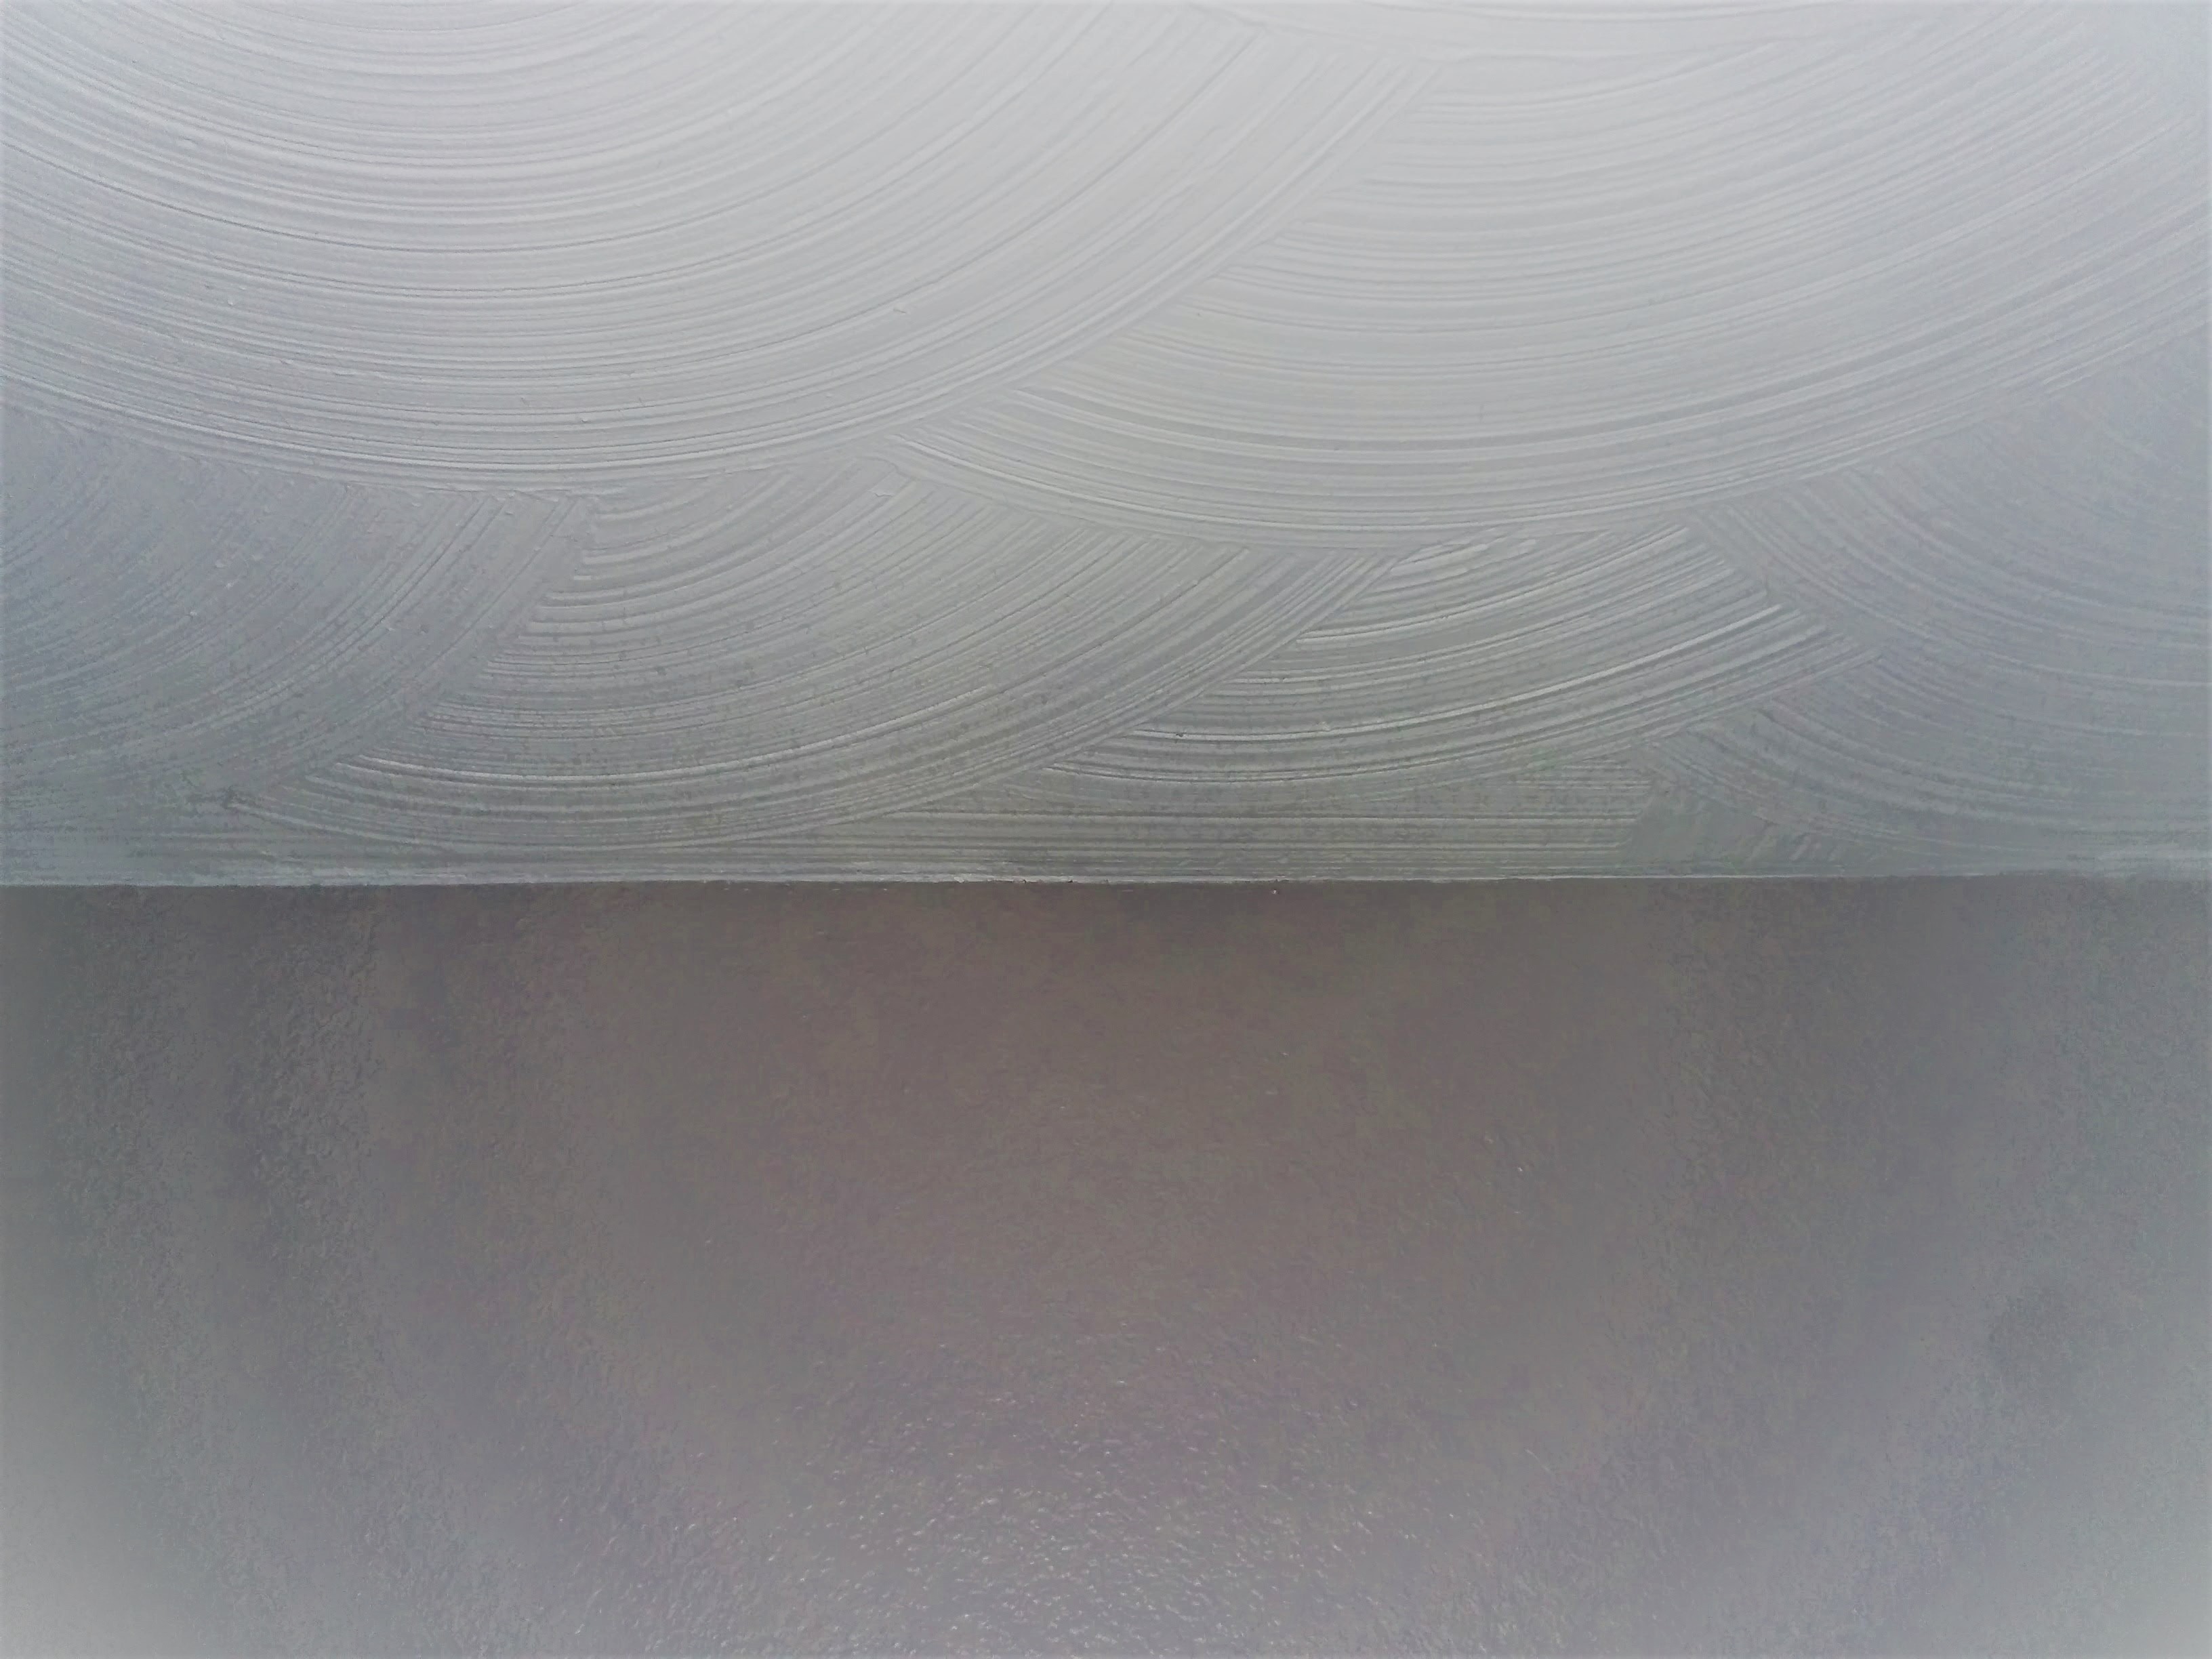 Foto della texture swirl del muro a secco sul soffitto e della texture a buccia d'arancia sul muro